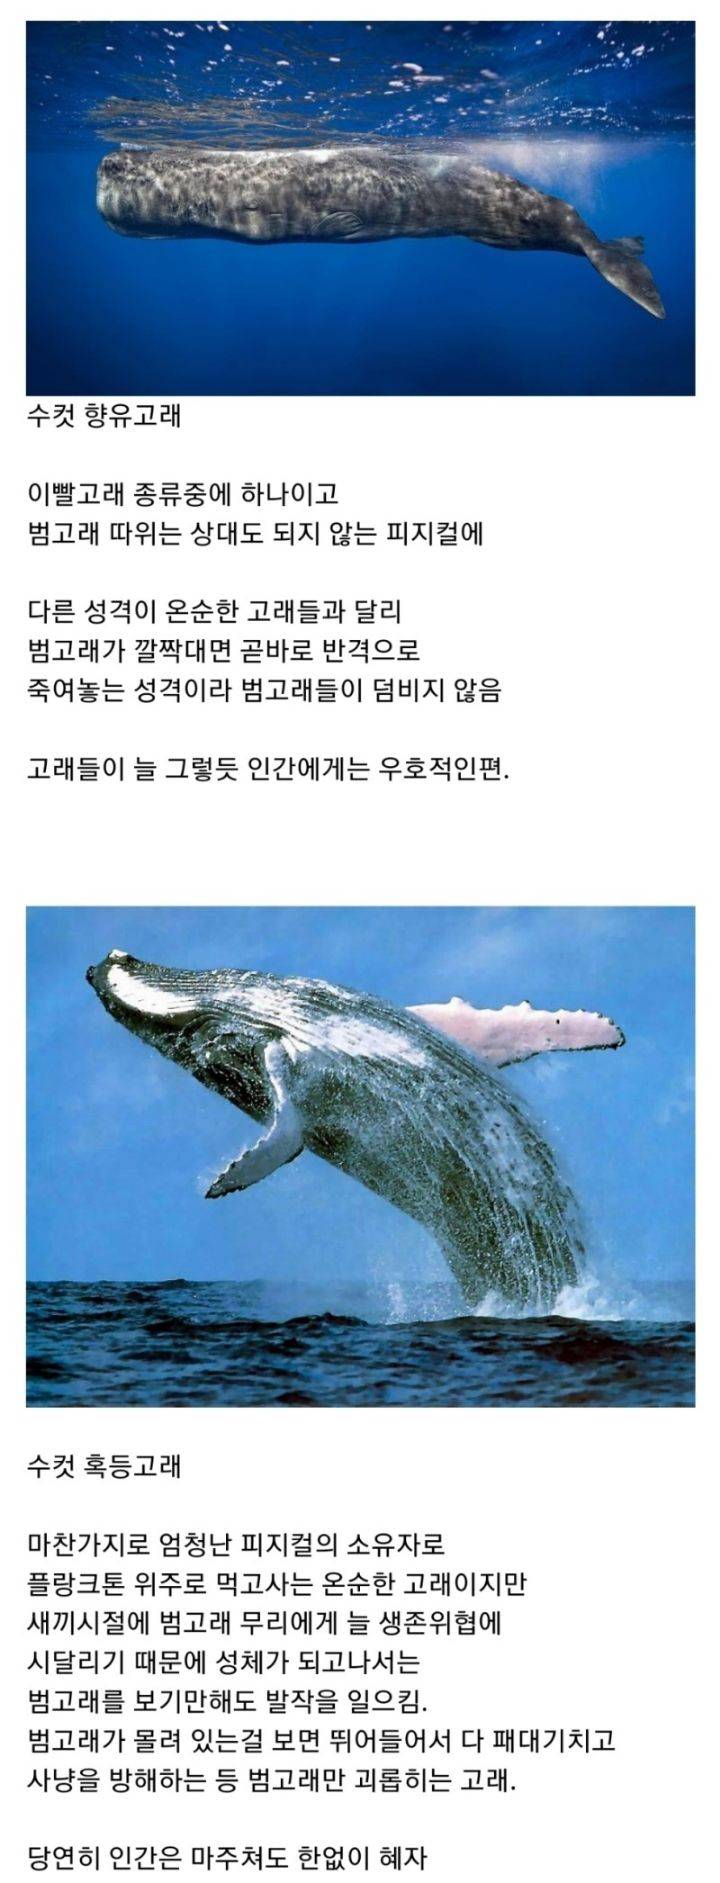 14 범고래 보다도 강하다는 해양생물.jpg